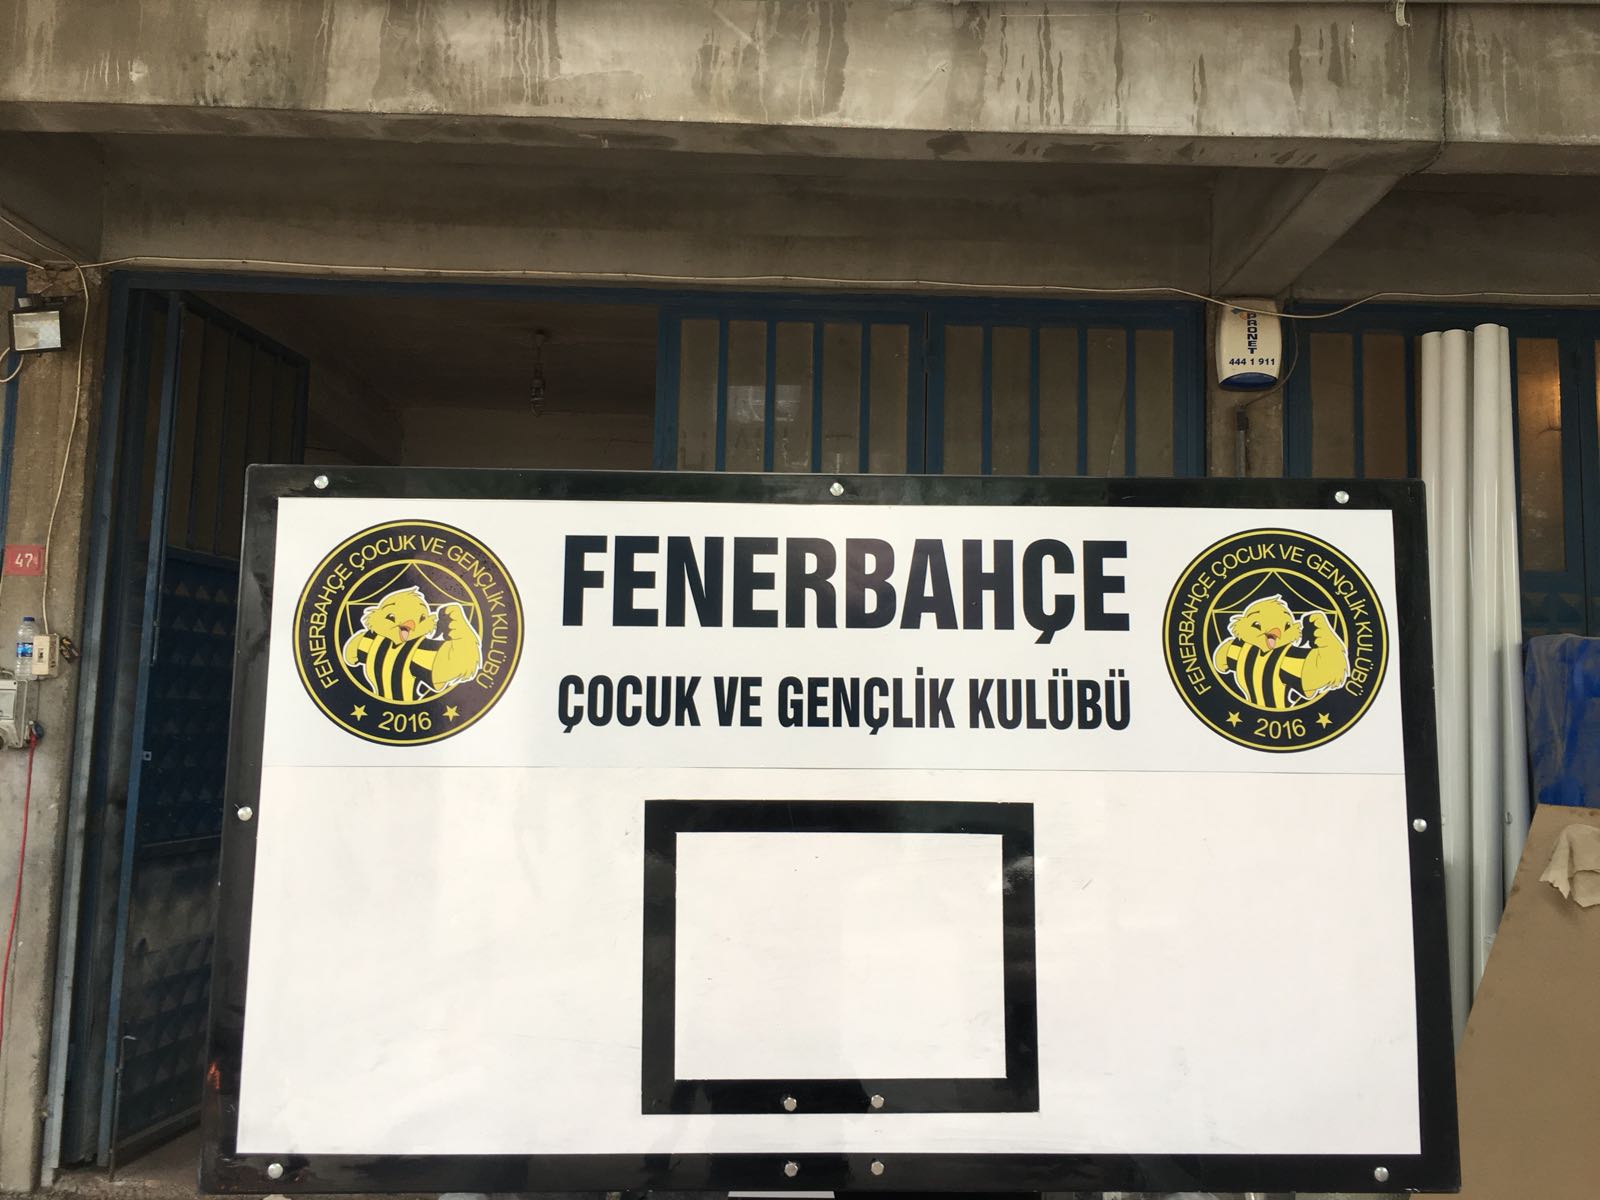 Denizli Fenerbahçeliler şubesine potalar sevk edilmiştir